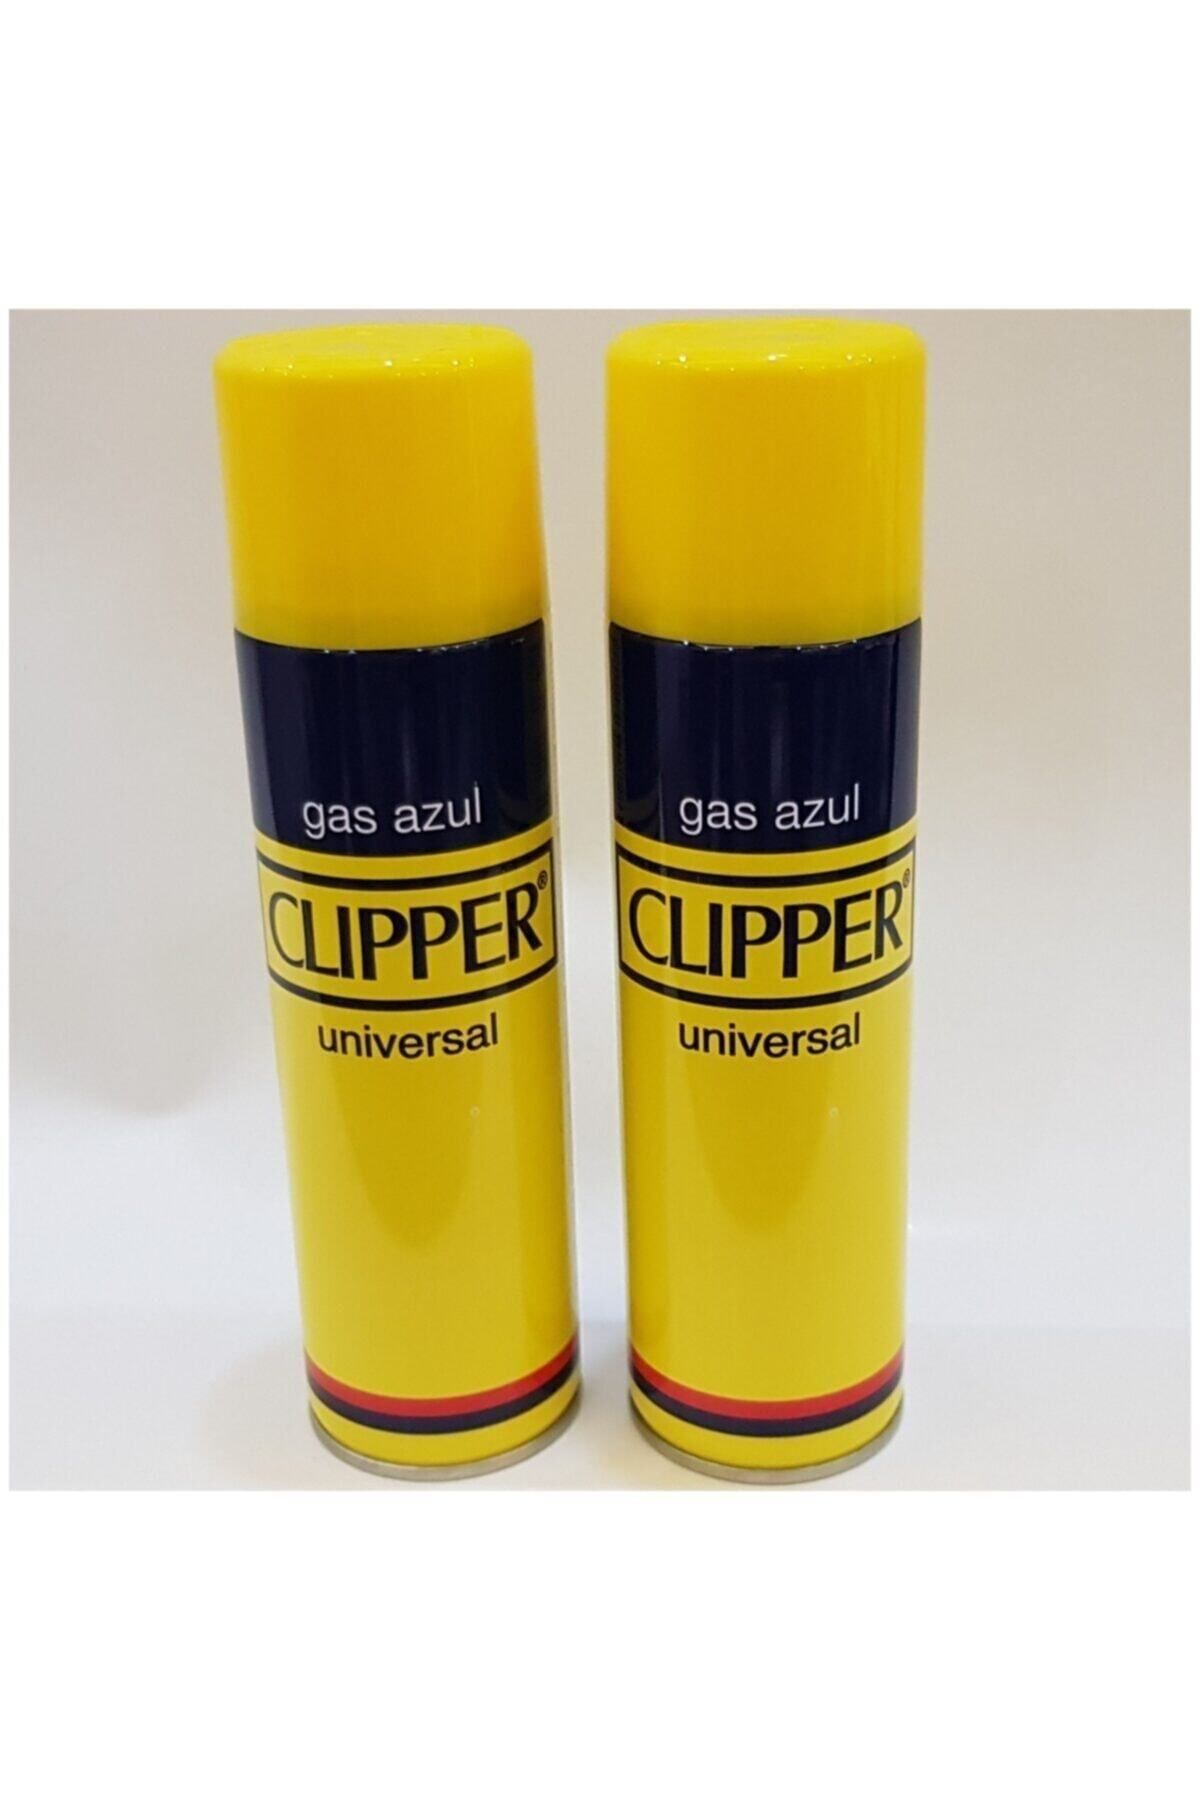 Clipper Çakmak Gazı 2'li  250 ml X 2